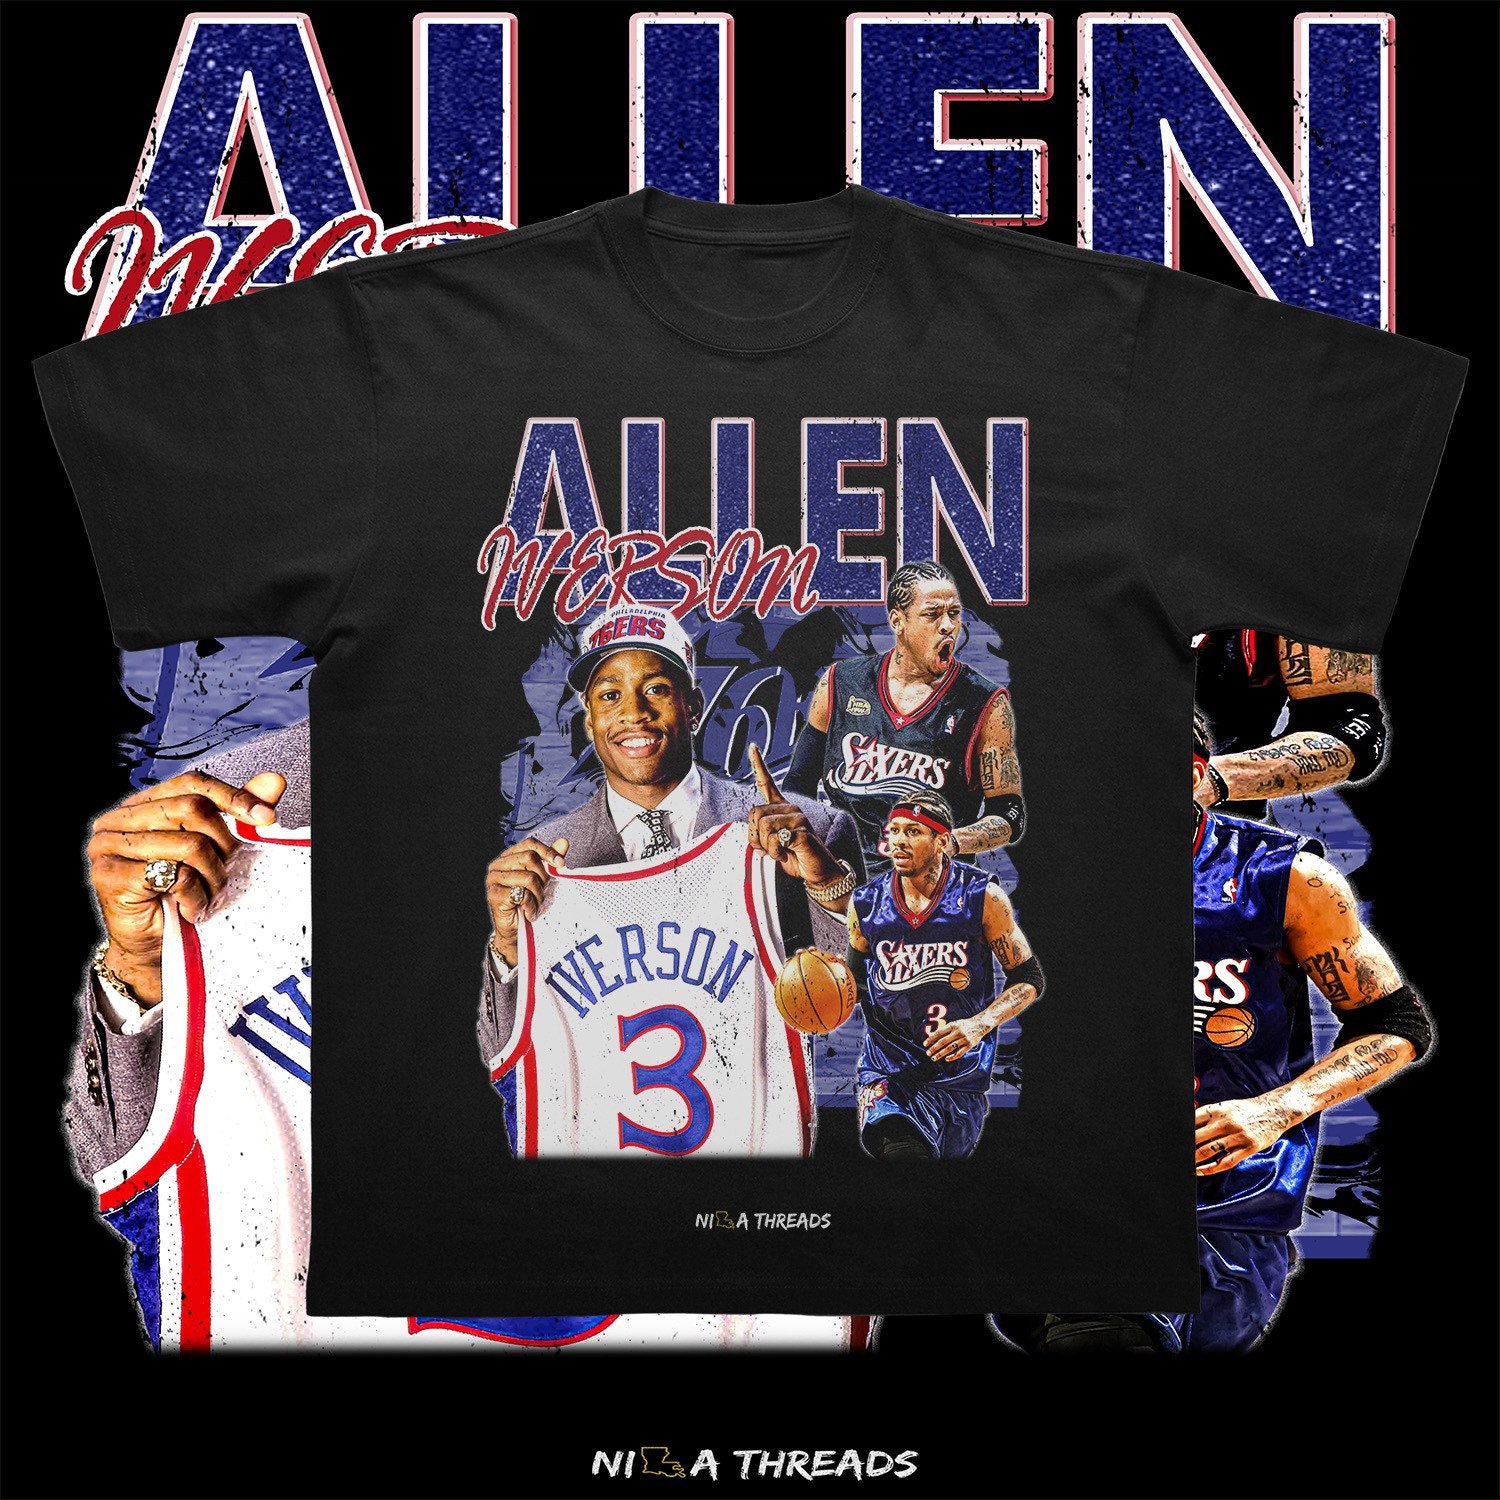 Allen Iverson Shirt, Allen Iverson Graphic Shirt